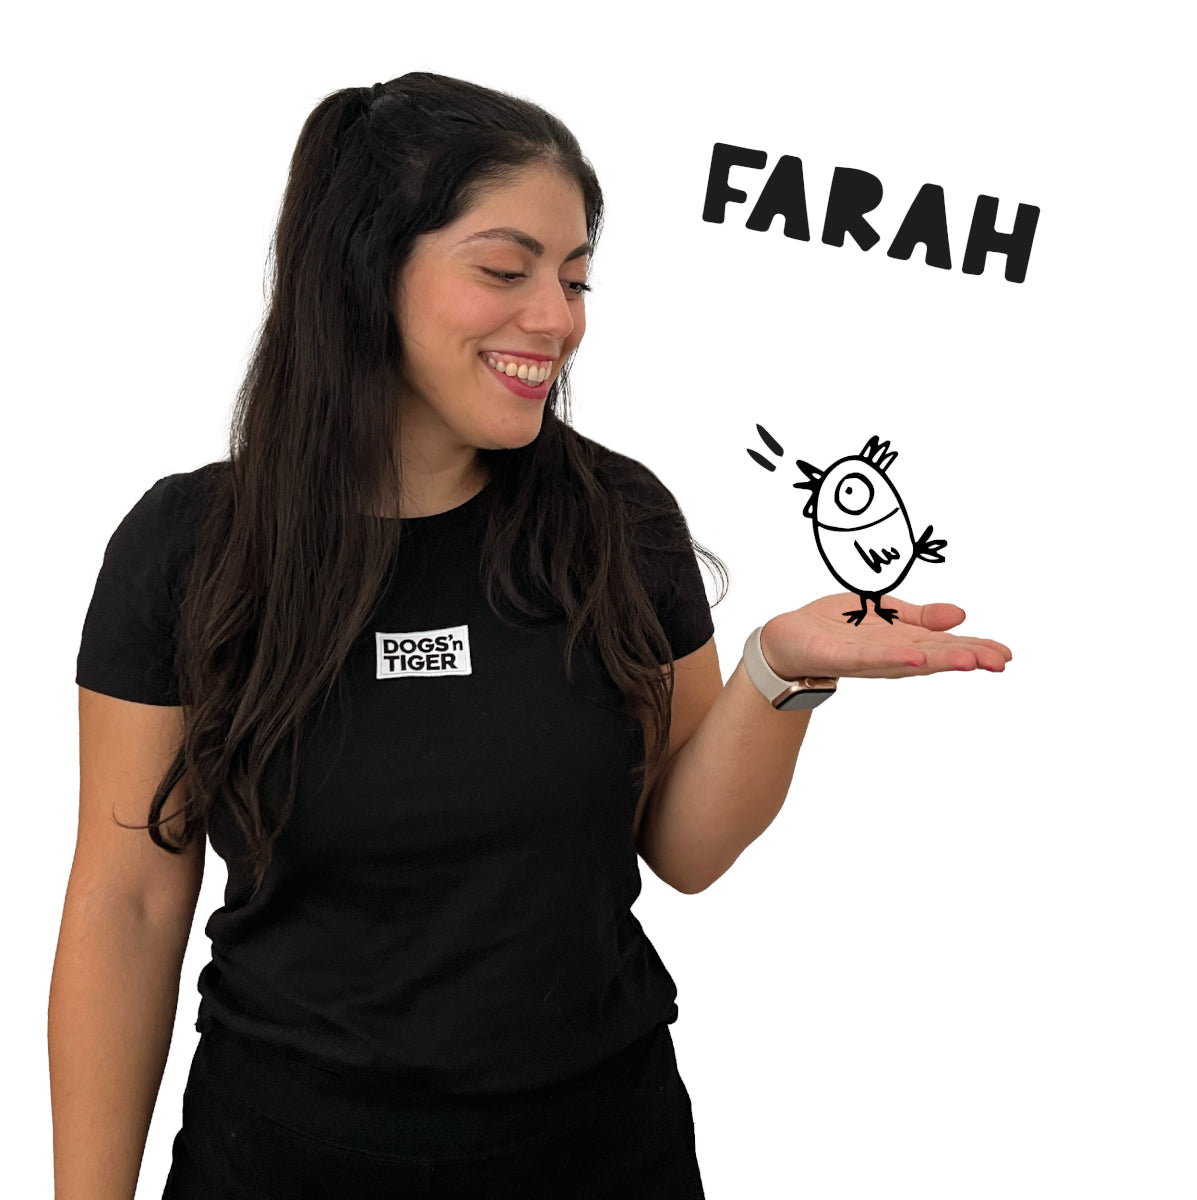 Foto von Farah mit schwarzem Shirt mit Dogs'n Tiger Logo